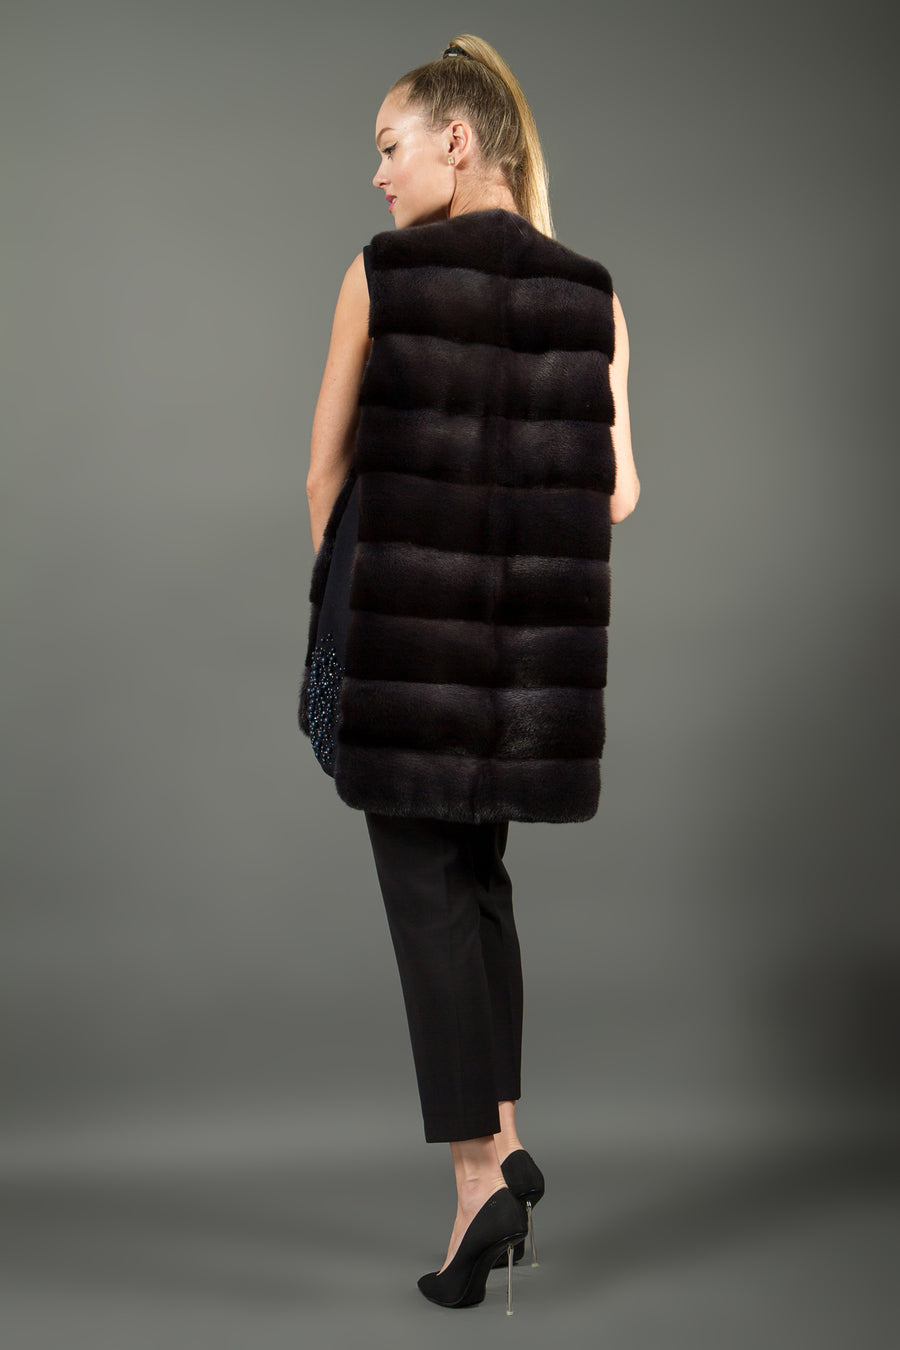 Cashmere and mink fur vest